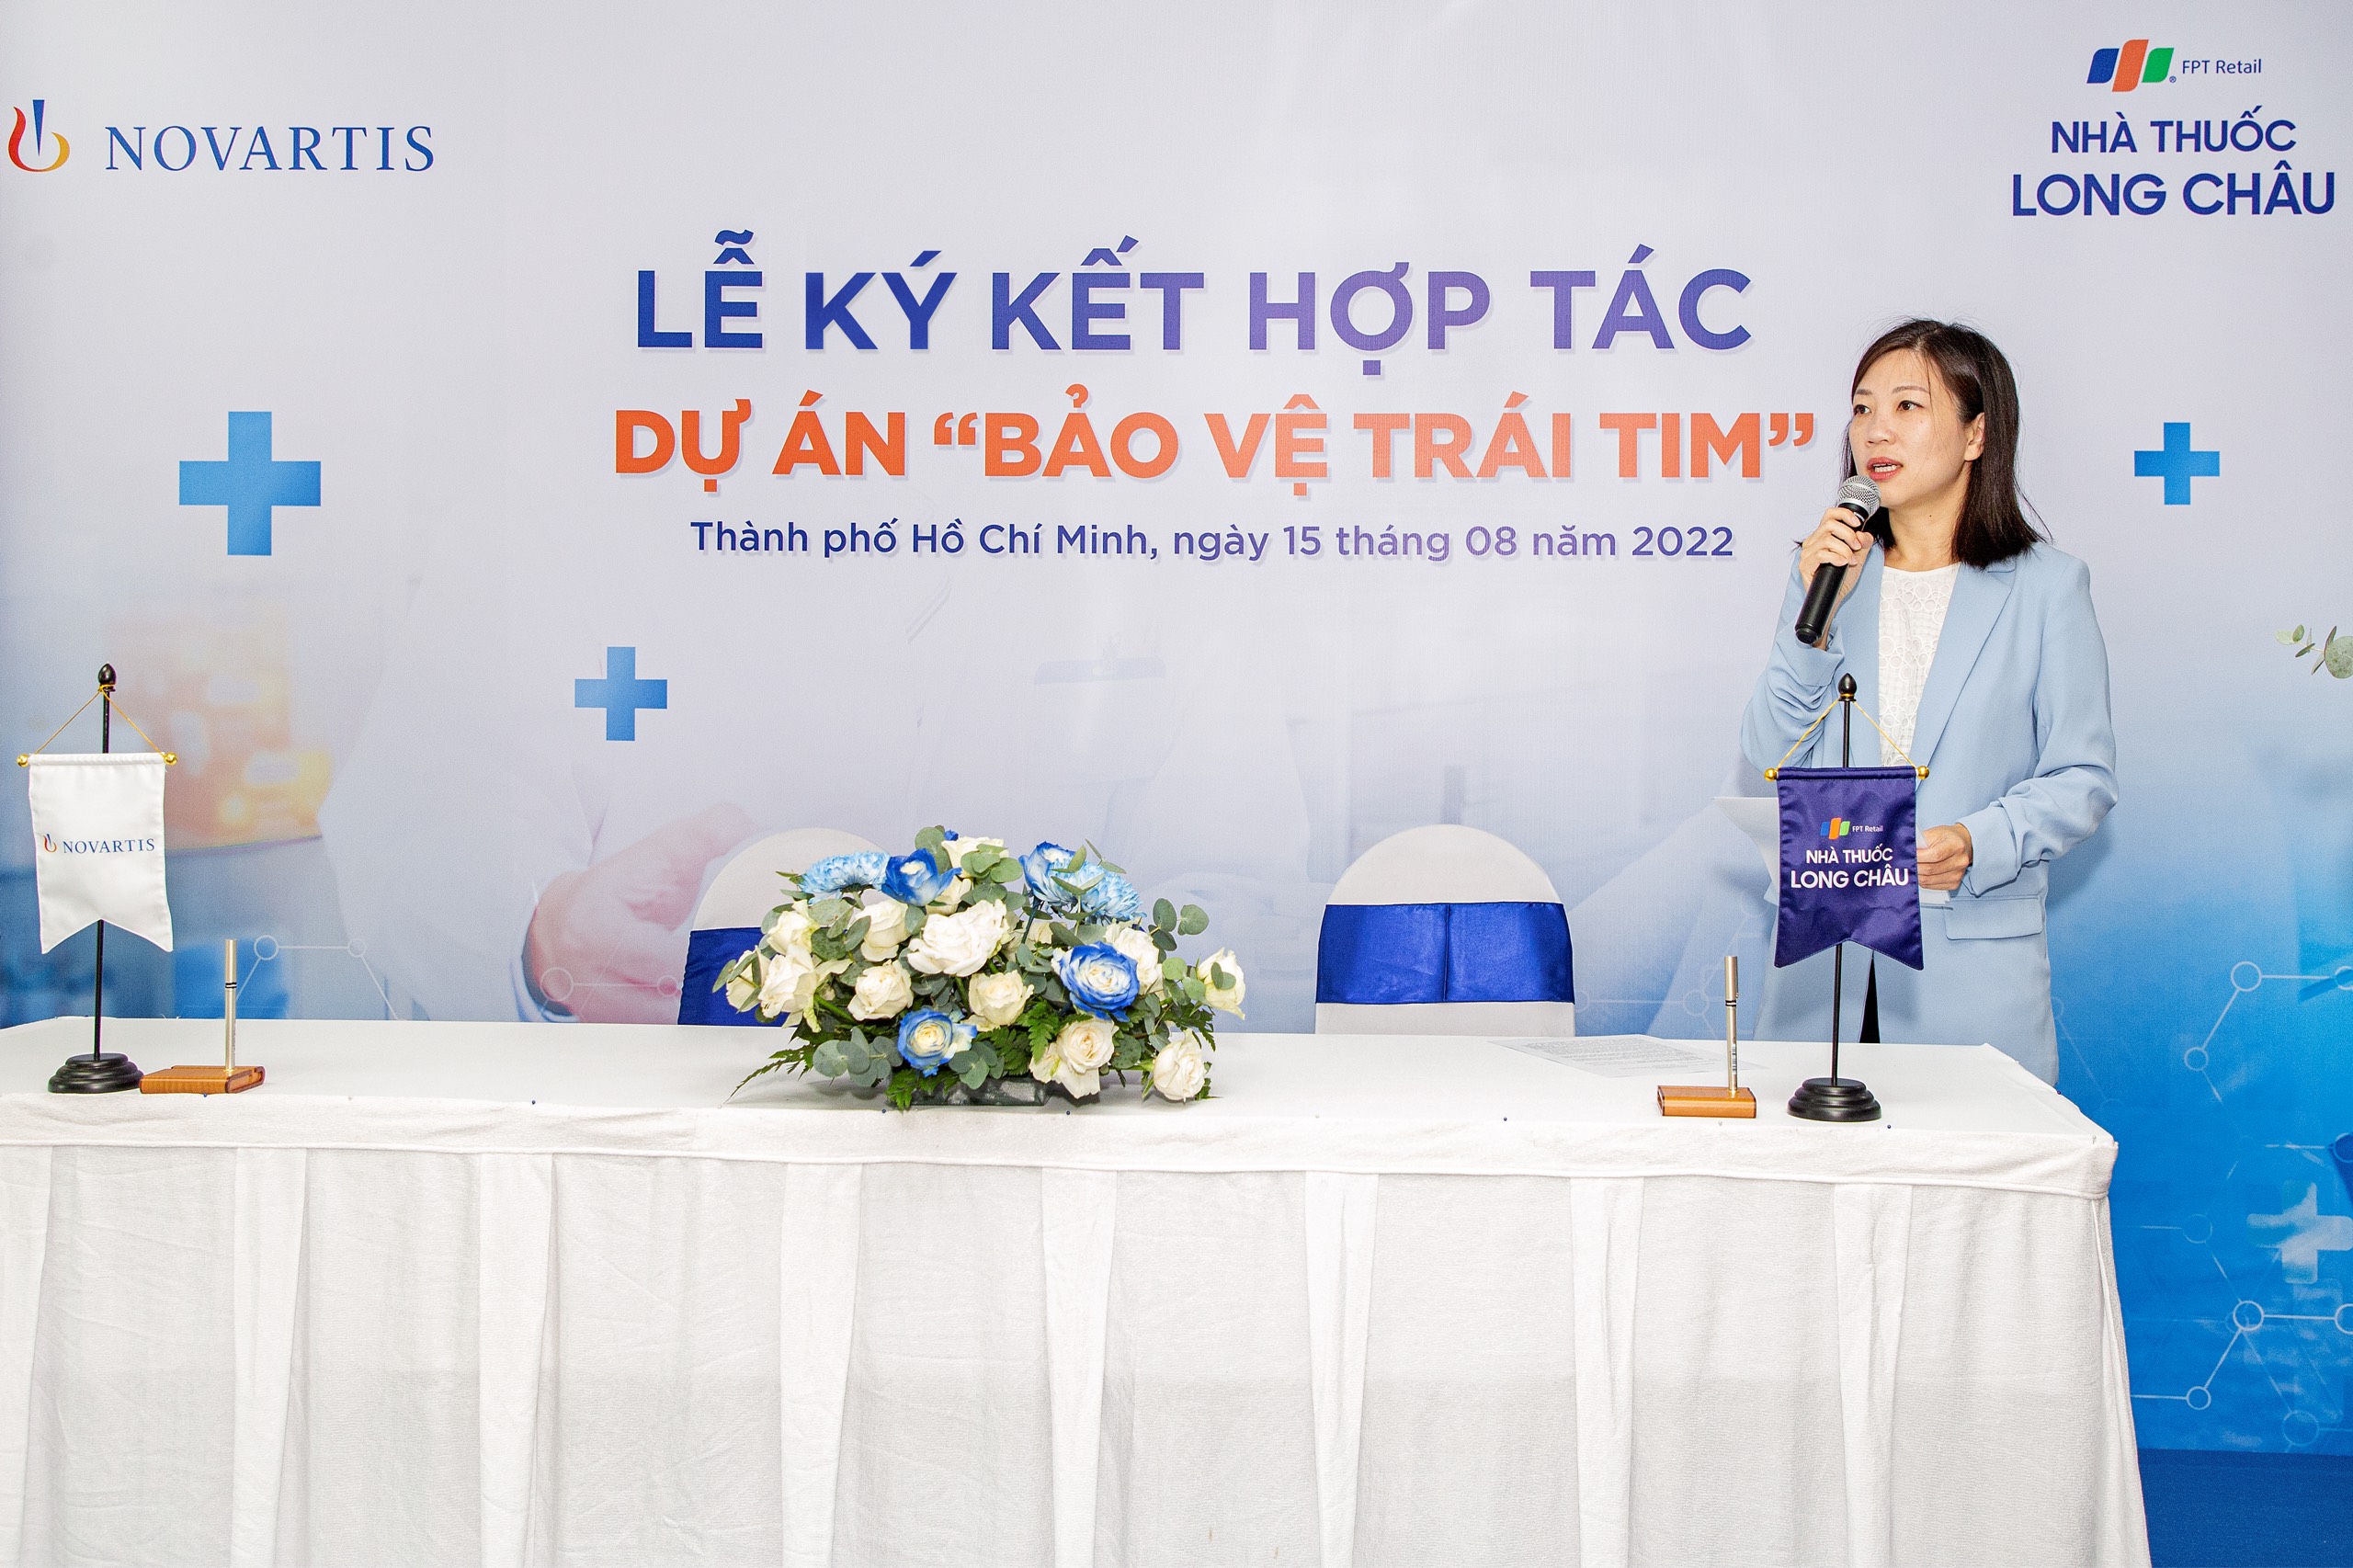 Giám đốc Quốc gia Novartis Việt Nam kỳ vọng dự án hợp tác cùng FPT Long Châu sẽ góp phần nâng cao sức khỏe người dân tại Việt Nam